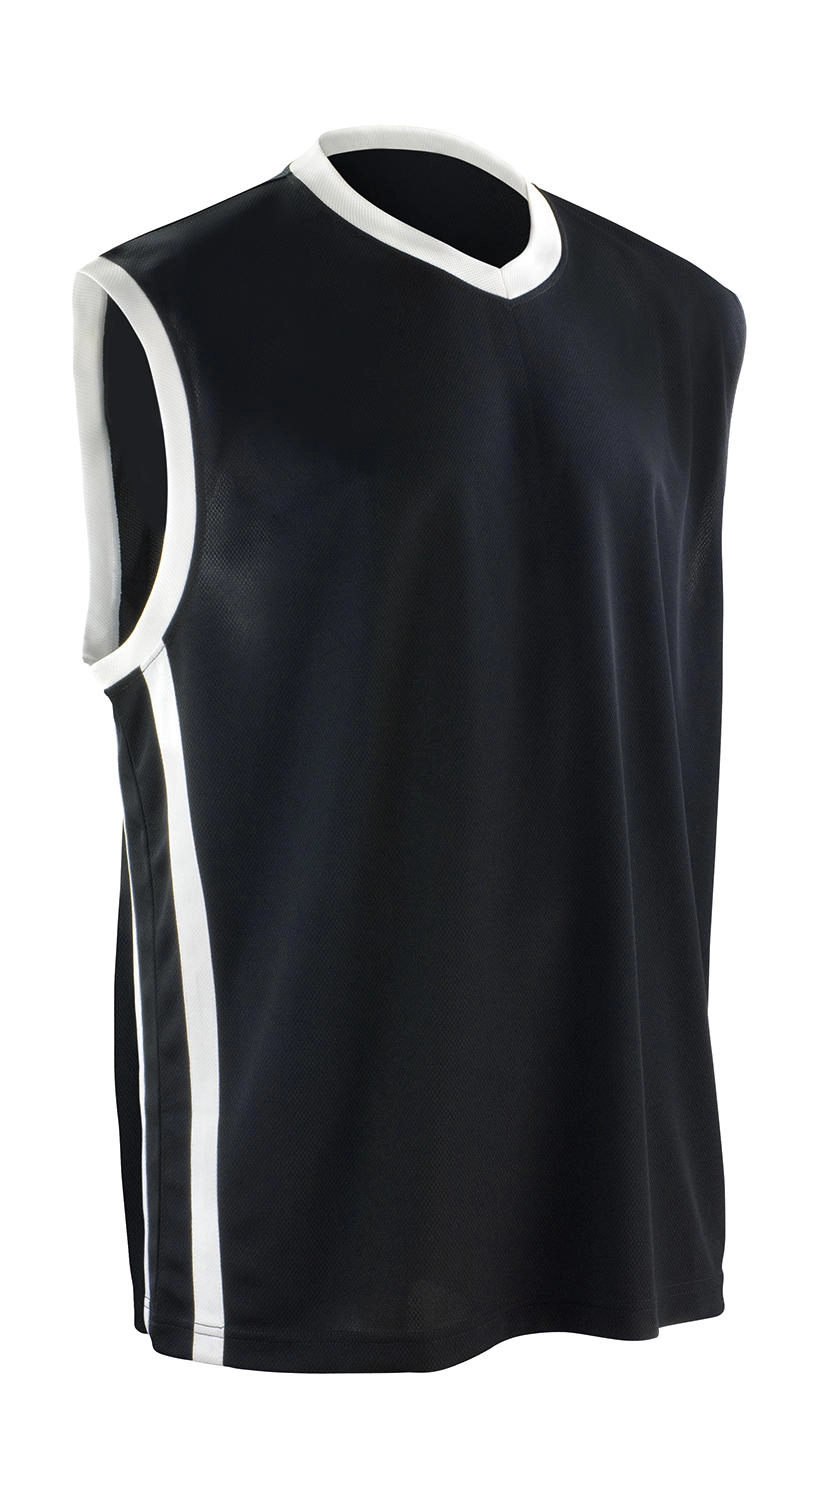 Men`s Quick Dry Basketball Top zum Besticken und Bedrucken in der Farbe Black/White mit Ihren Logo, Schriftzug oder Motiv.